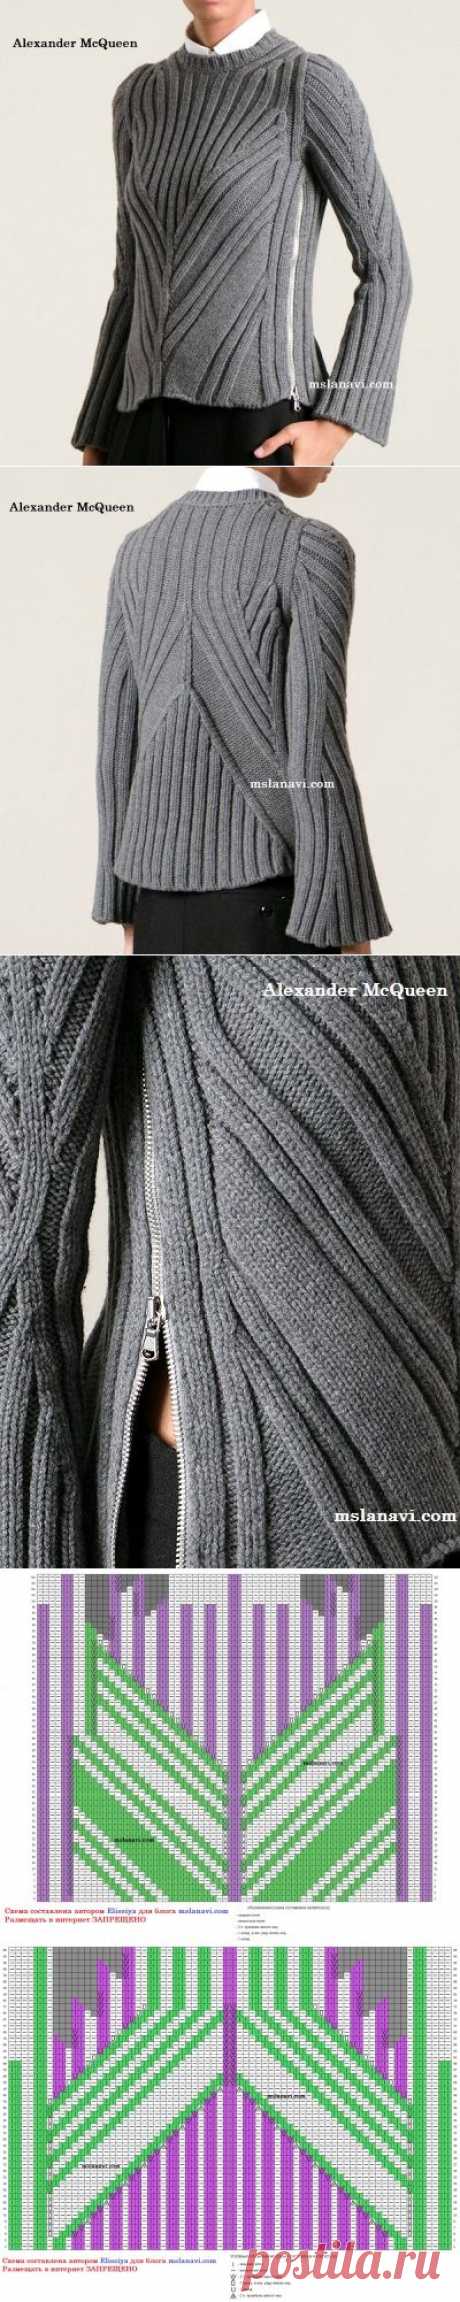 Модный пуловер резинкой | Вяжем с Лана Ви